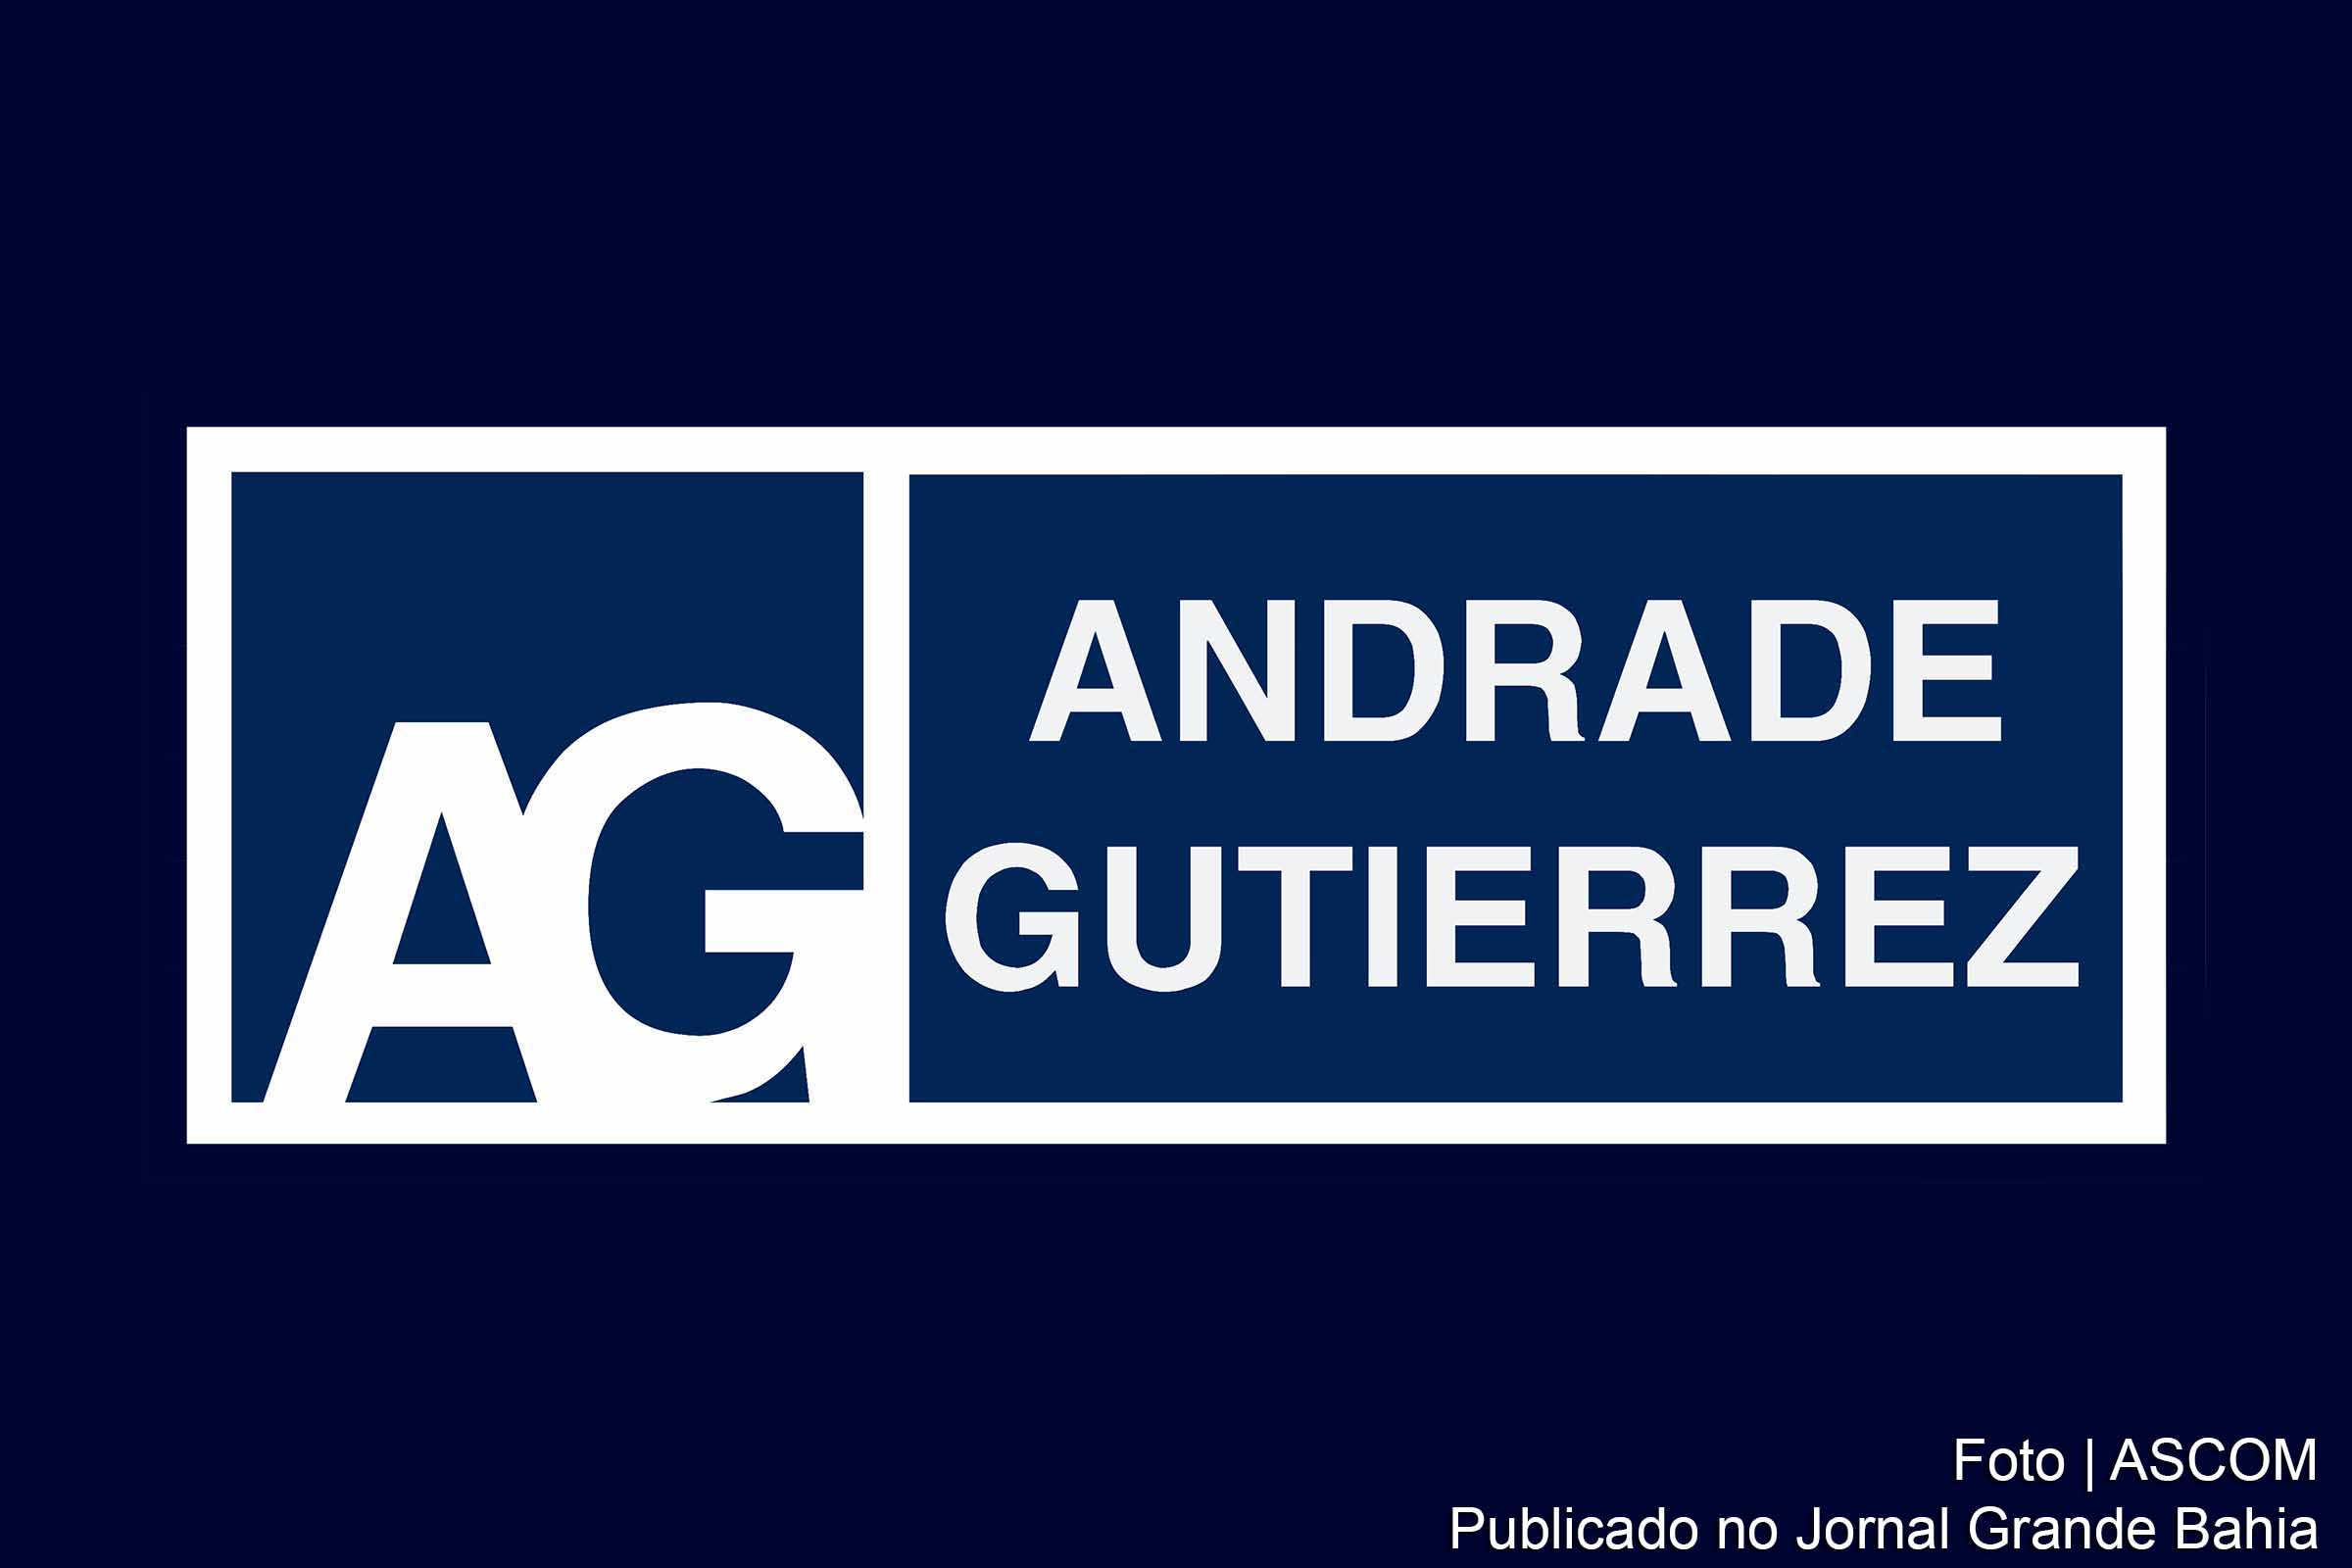 Declaração: "A Andrade Gutierrez deve um sincero pedido de desculpas ao povo brasileiro. Reconhecemos que erros graves foram cometidos nos últimos anos e, ao contrário de negá-los, estamos assumindo-os publicamente".